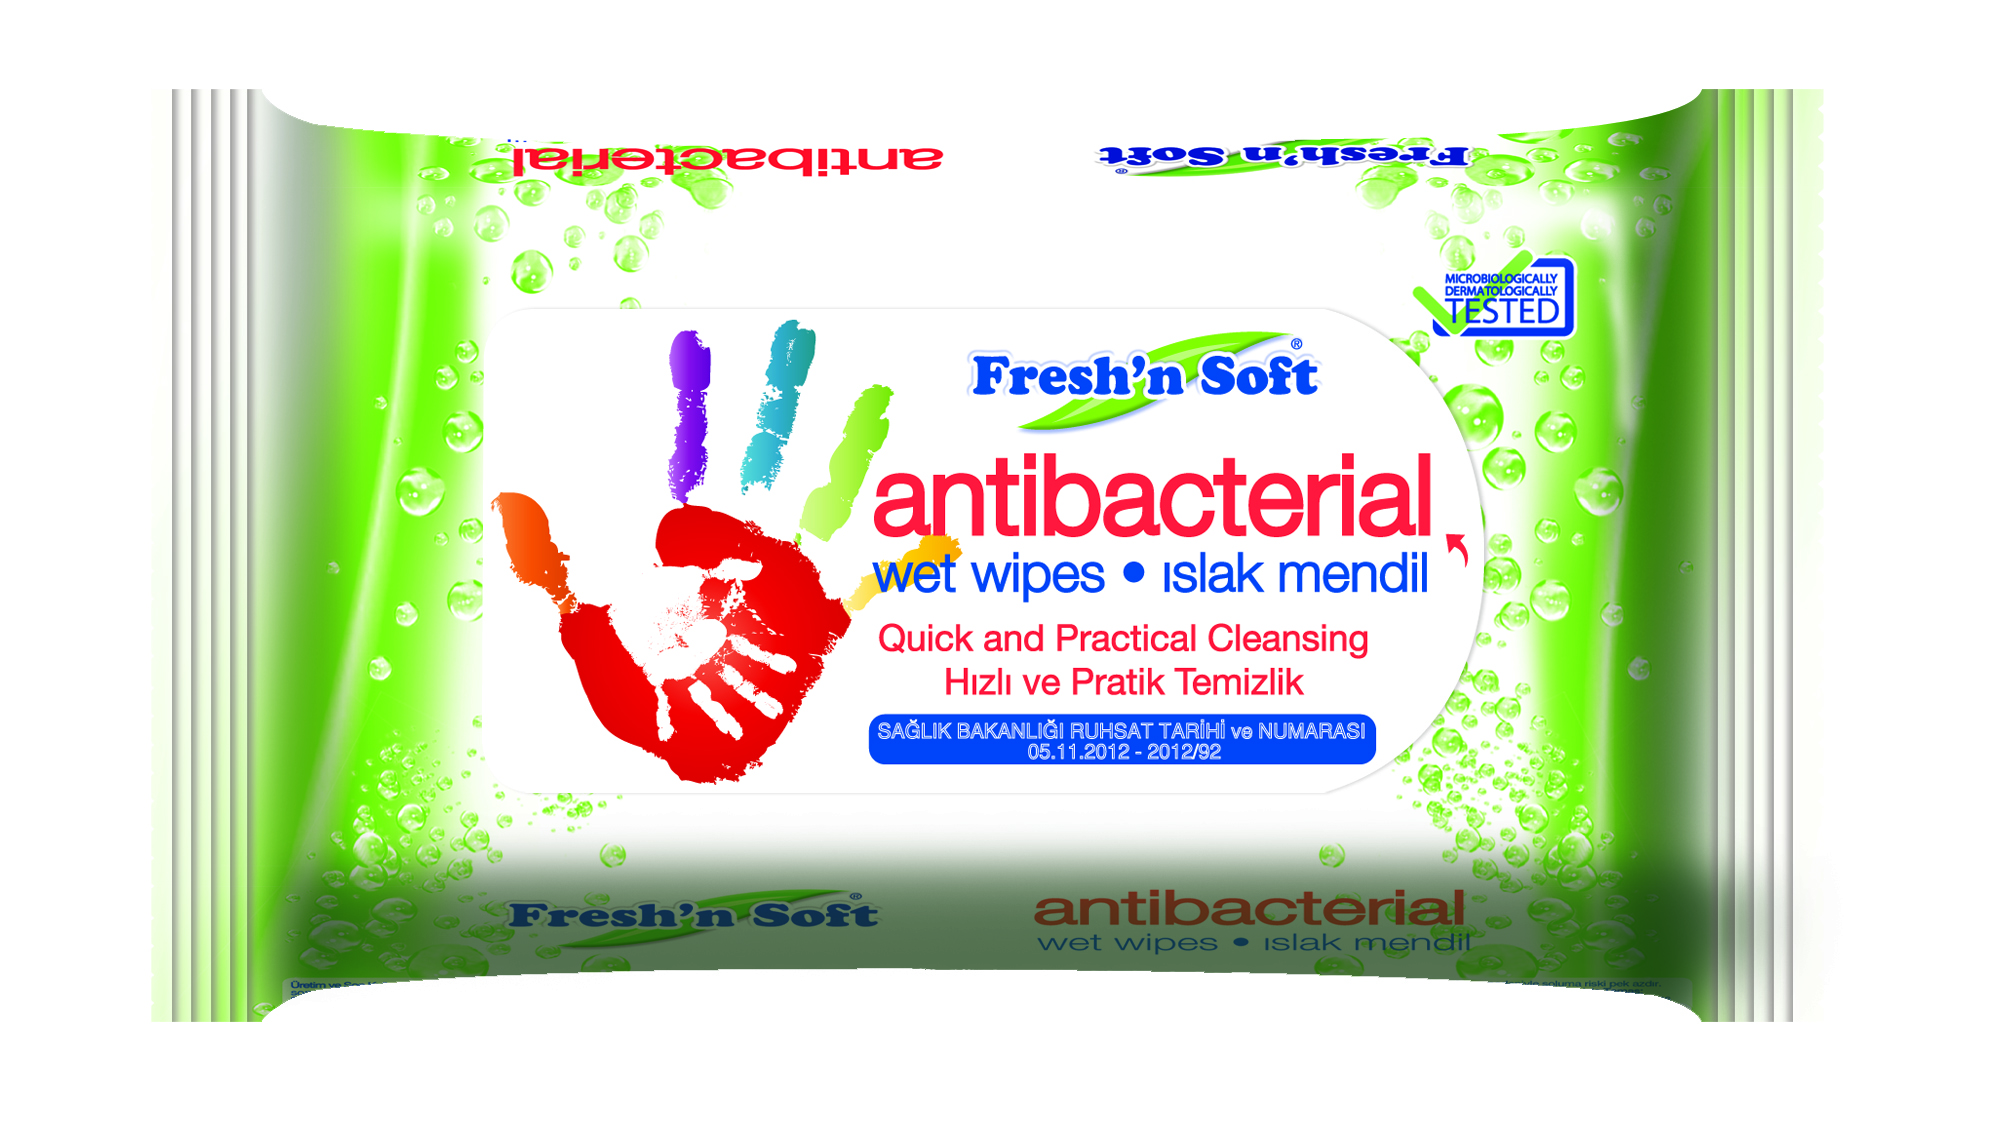 fresh-n-soft-ile-bakterilere-gecit-yok